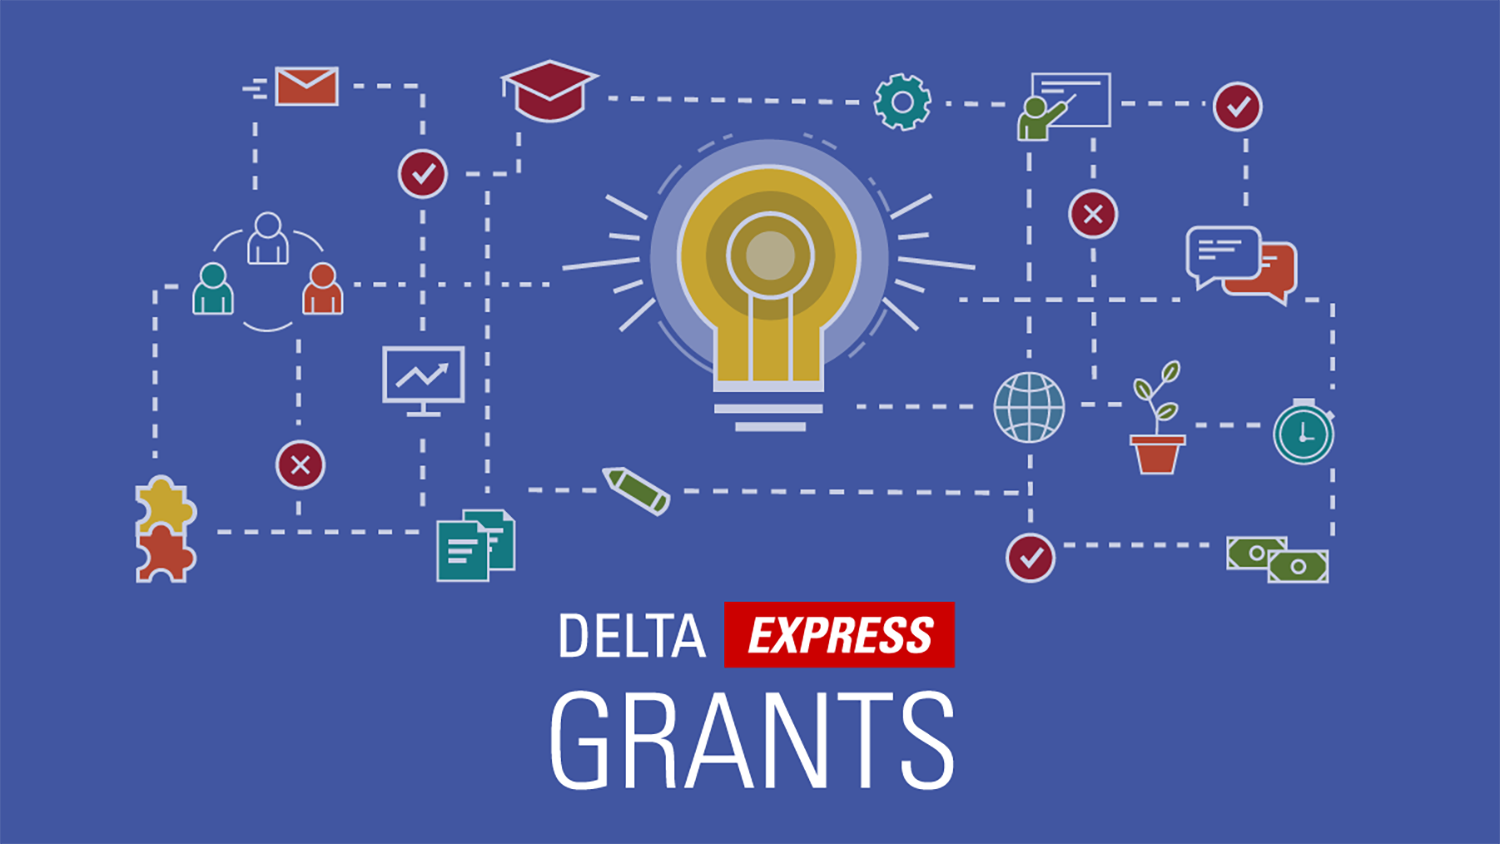 Decorative, text "DELTA Express Grants"